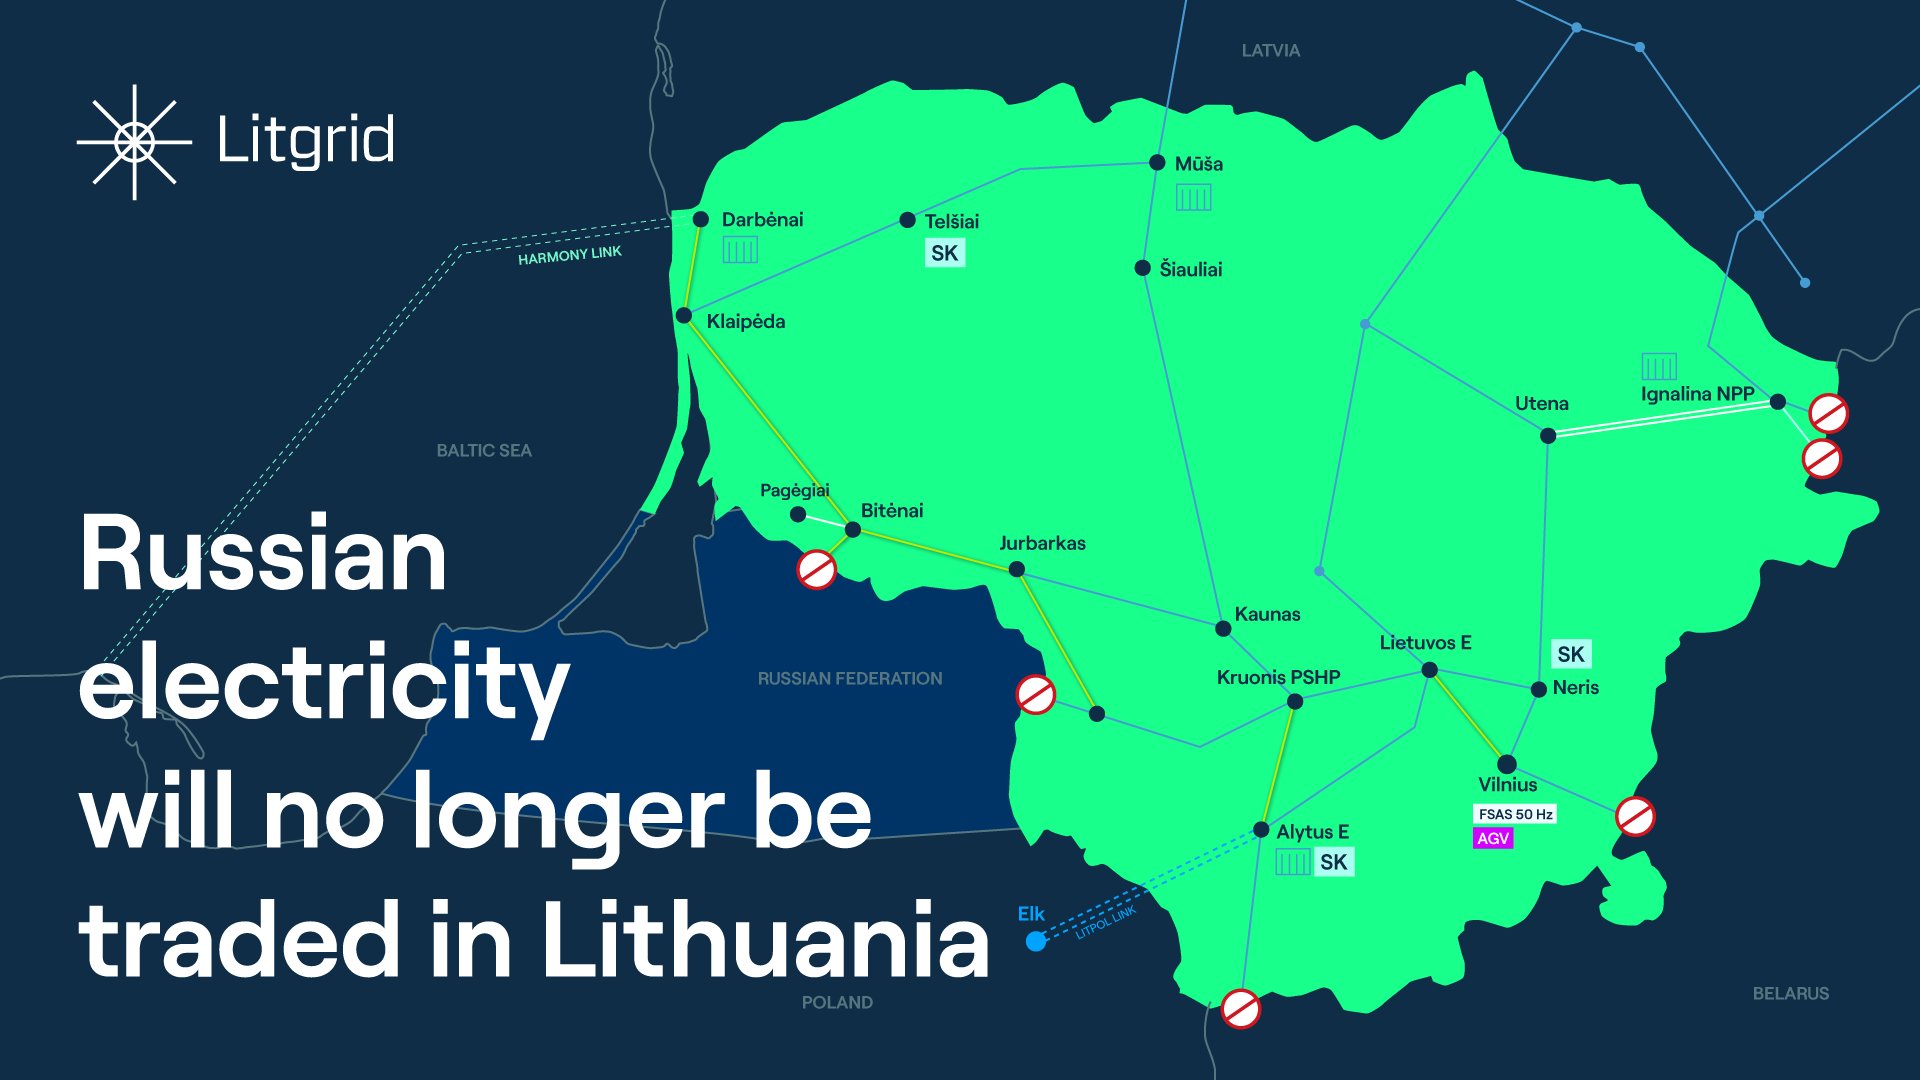 立陶宛输电系统运营商Litgrid说，该国从俄罗斯进口电力成为历史